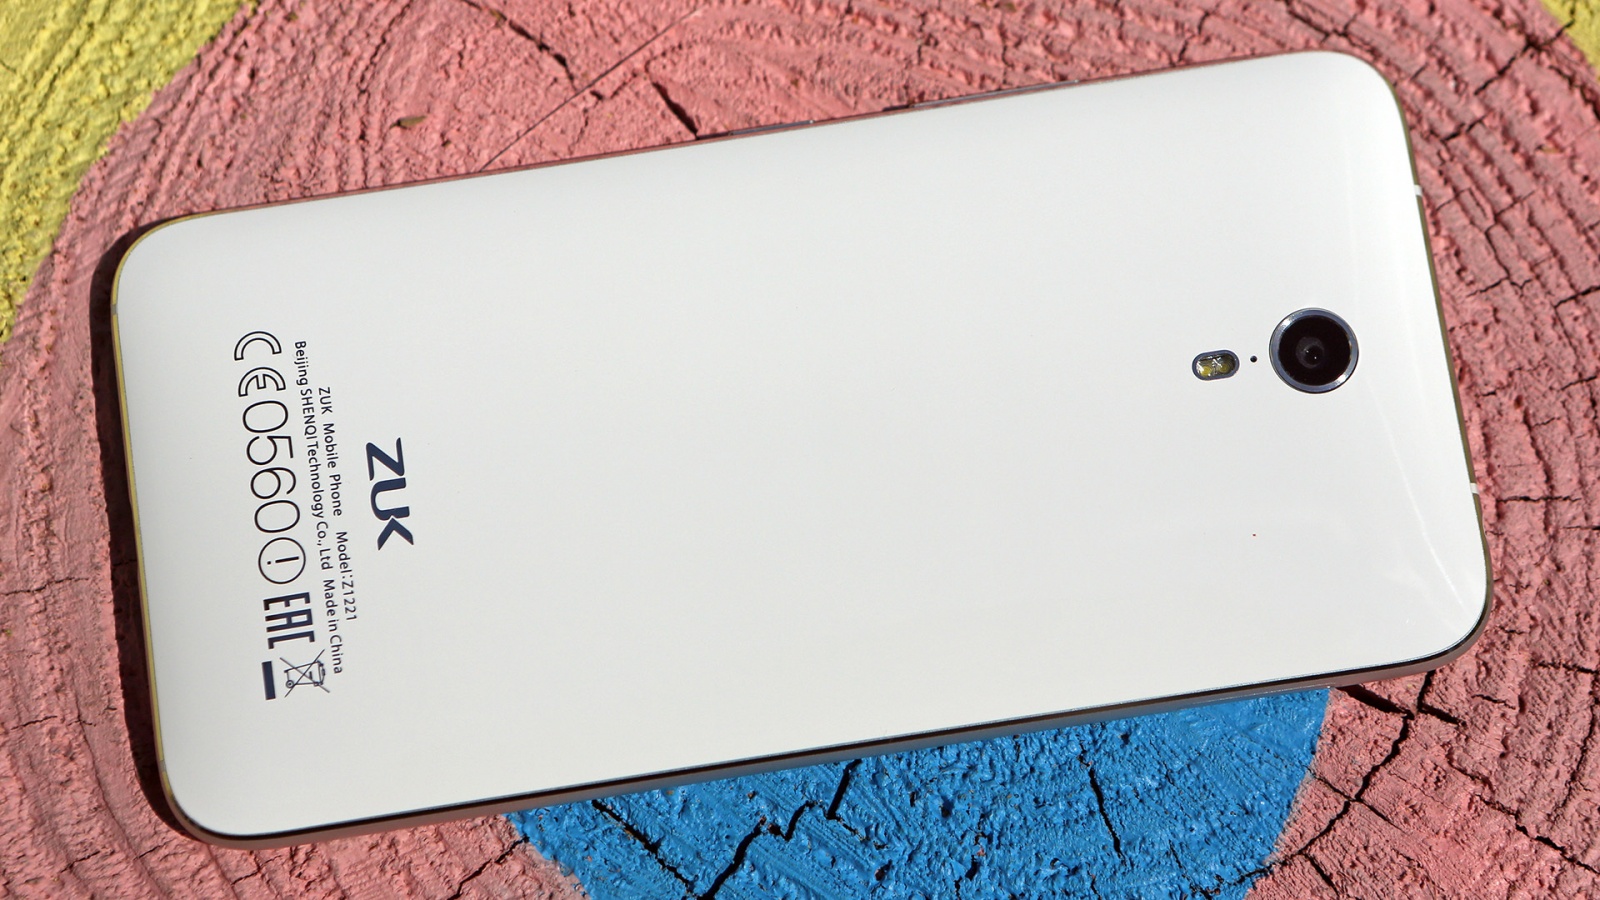 Обзор смартфона ZUK Z1: мощность и автономность по доступной цене - 4